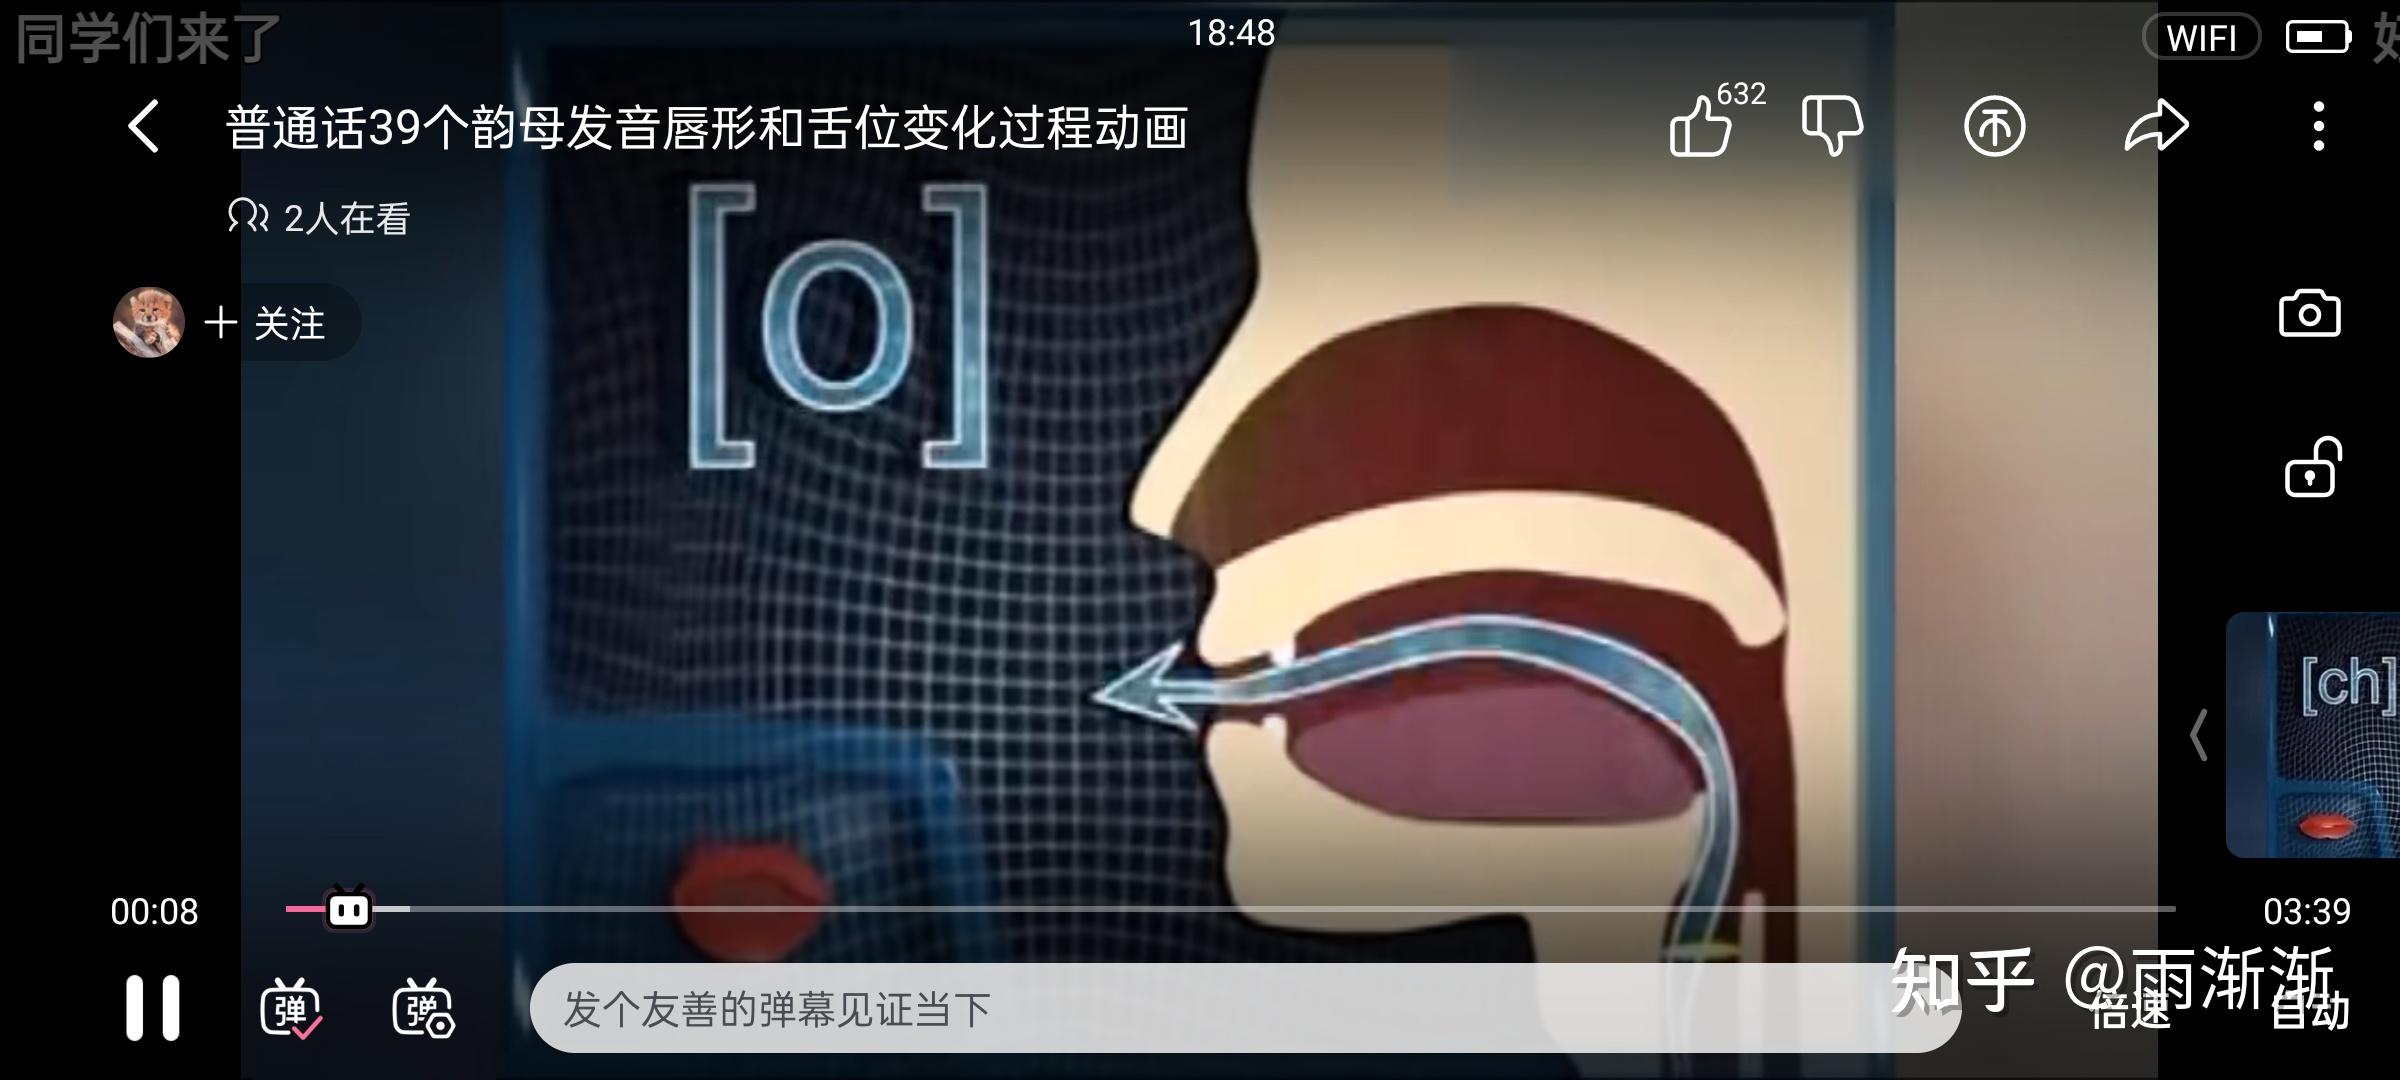 韵母:视频来源(b站):普通话39个韵母发音唇形和舌位变化过程动画当